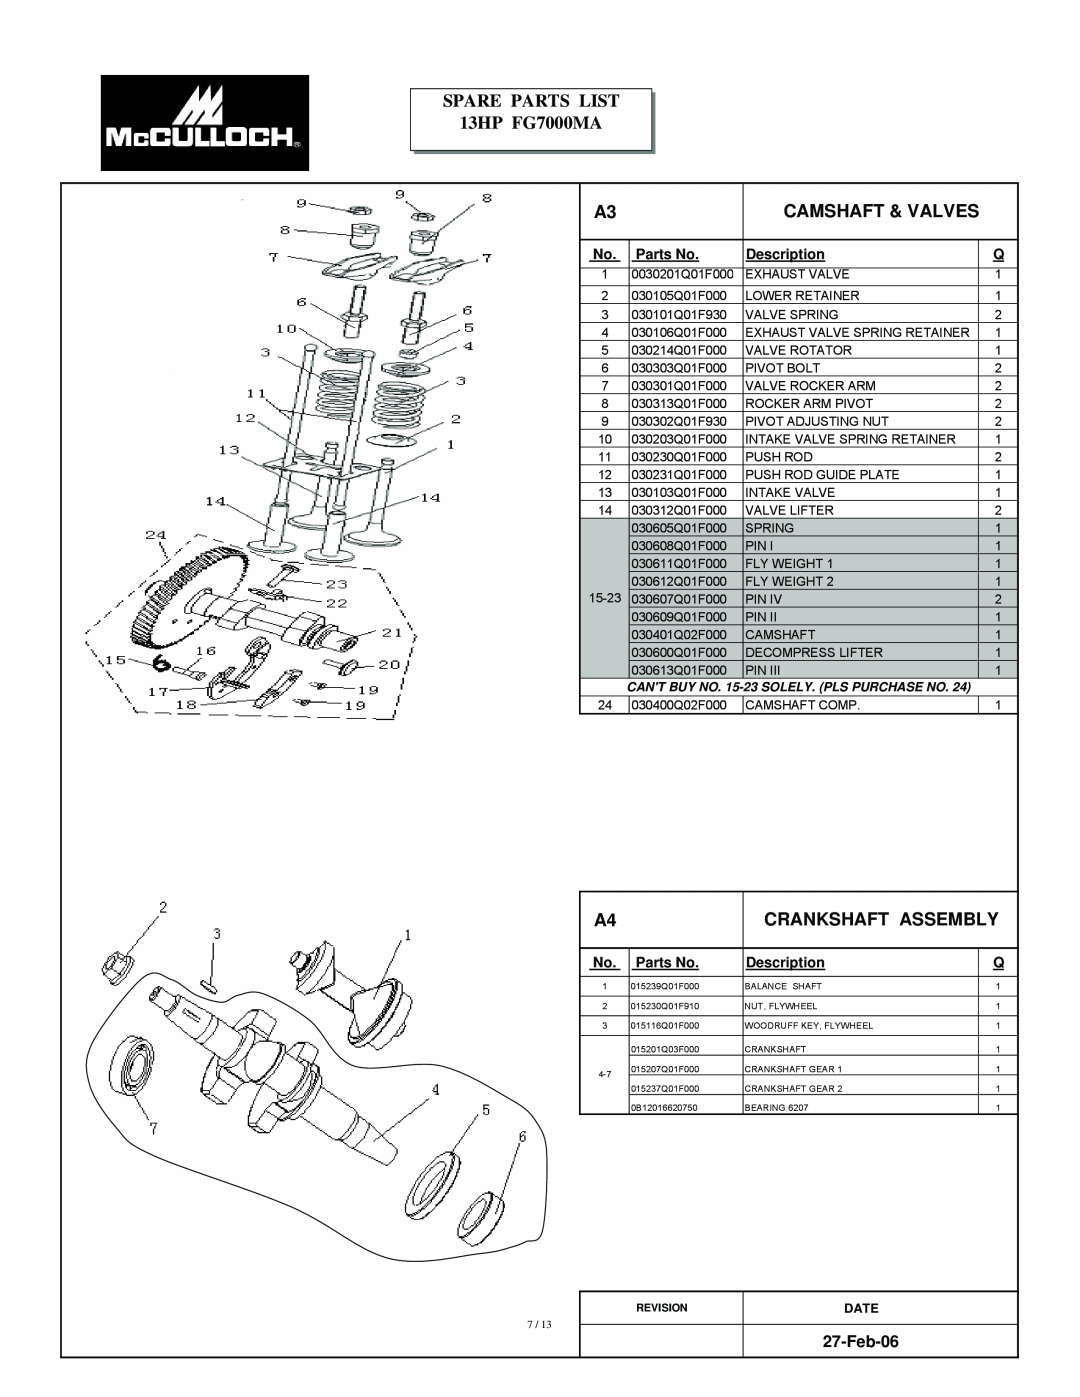 McCulloch Camshaft & Valves, Crankshaft Assembly, Feb-06, SPARE PARTS LIST 13HP FG7000MA, Parts No, Description, Date 